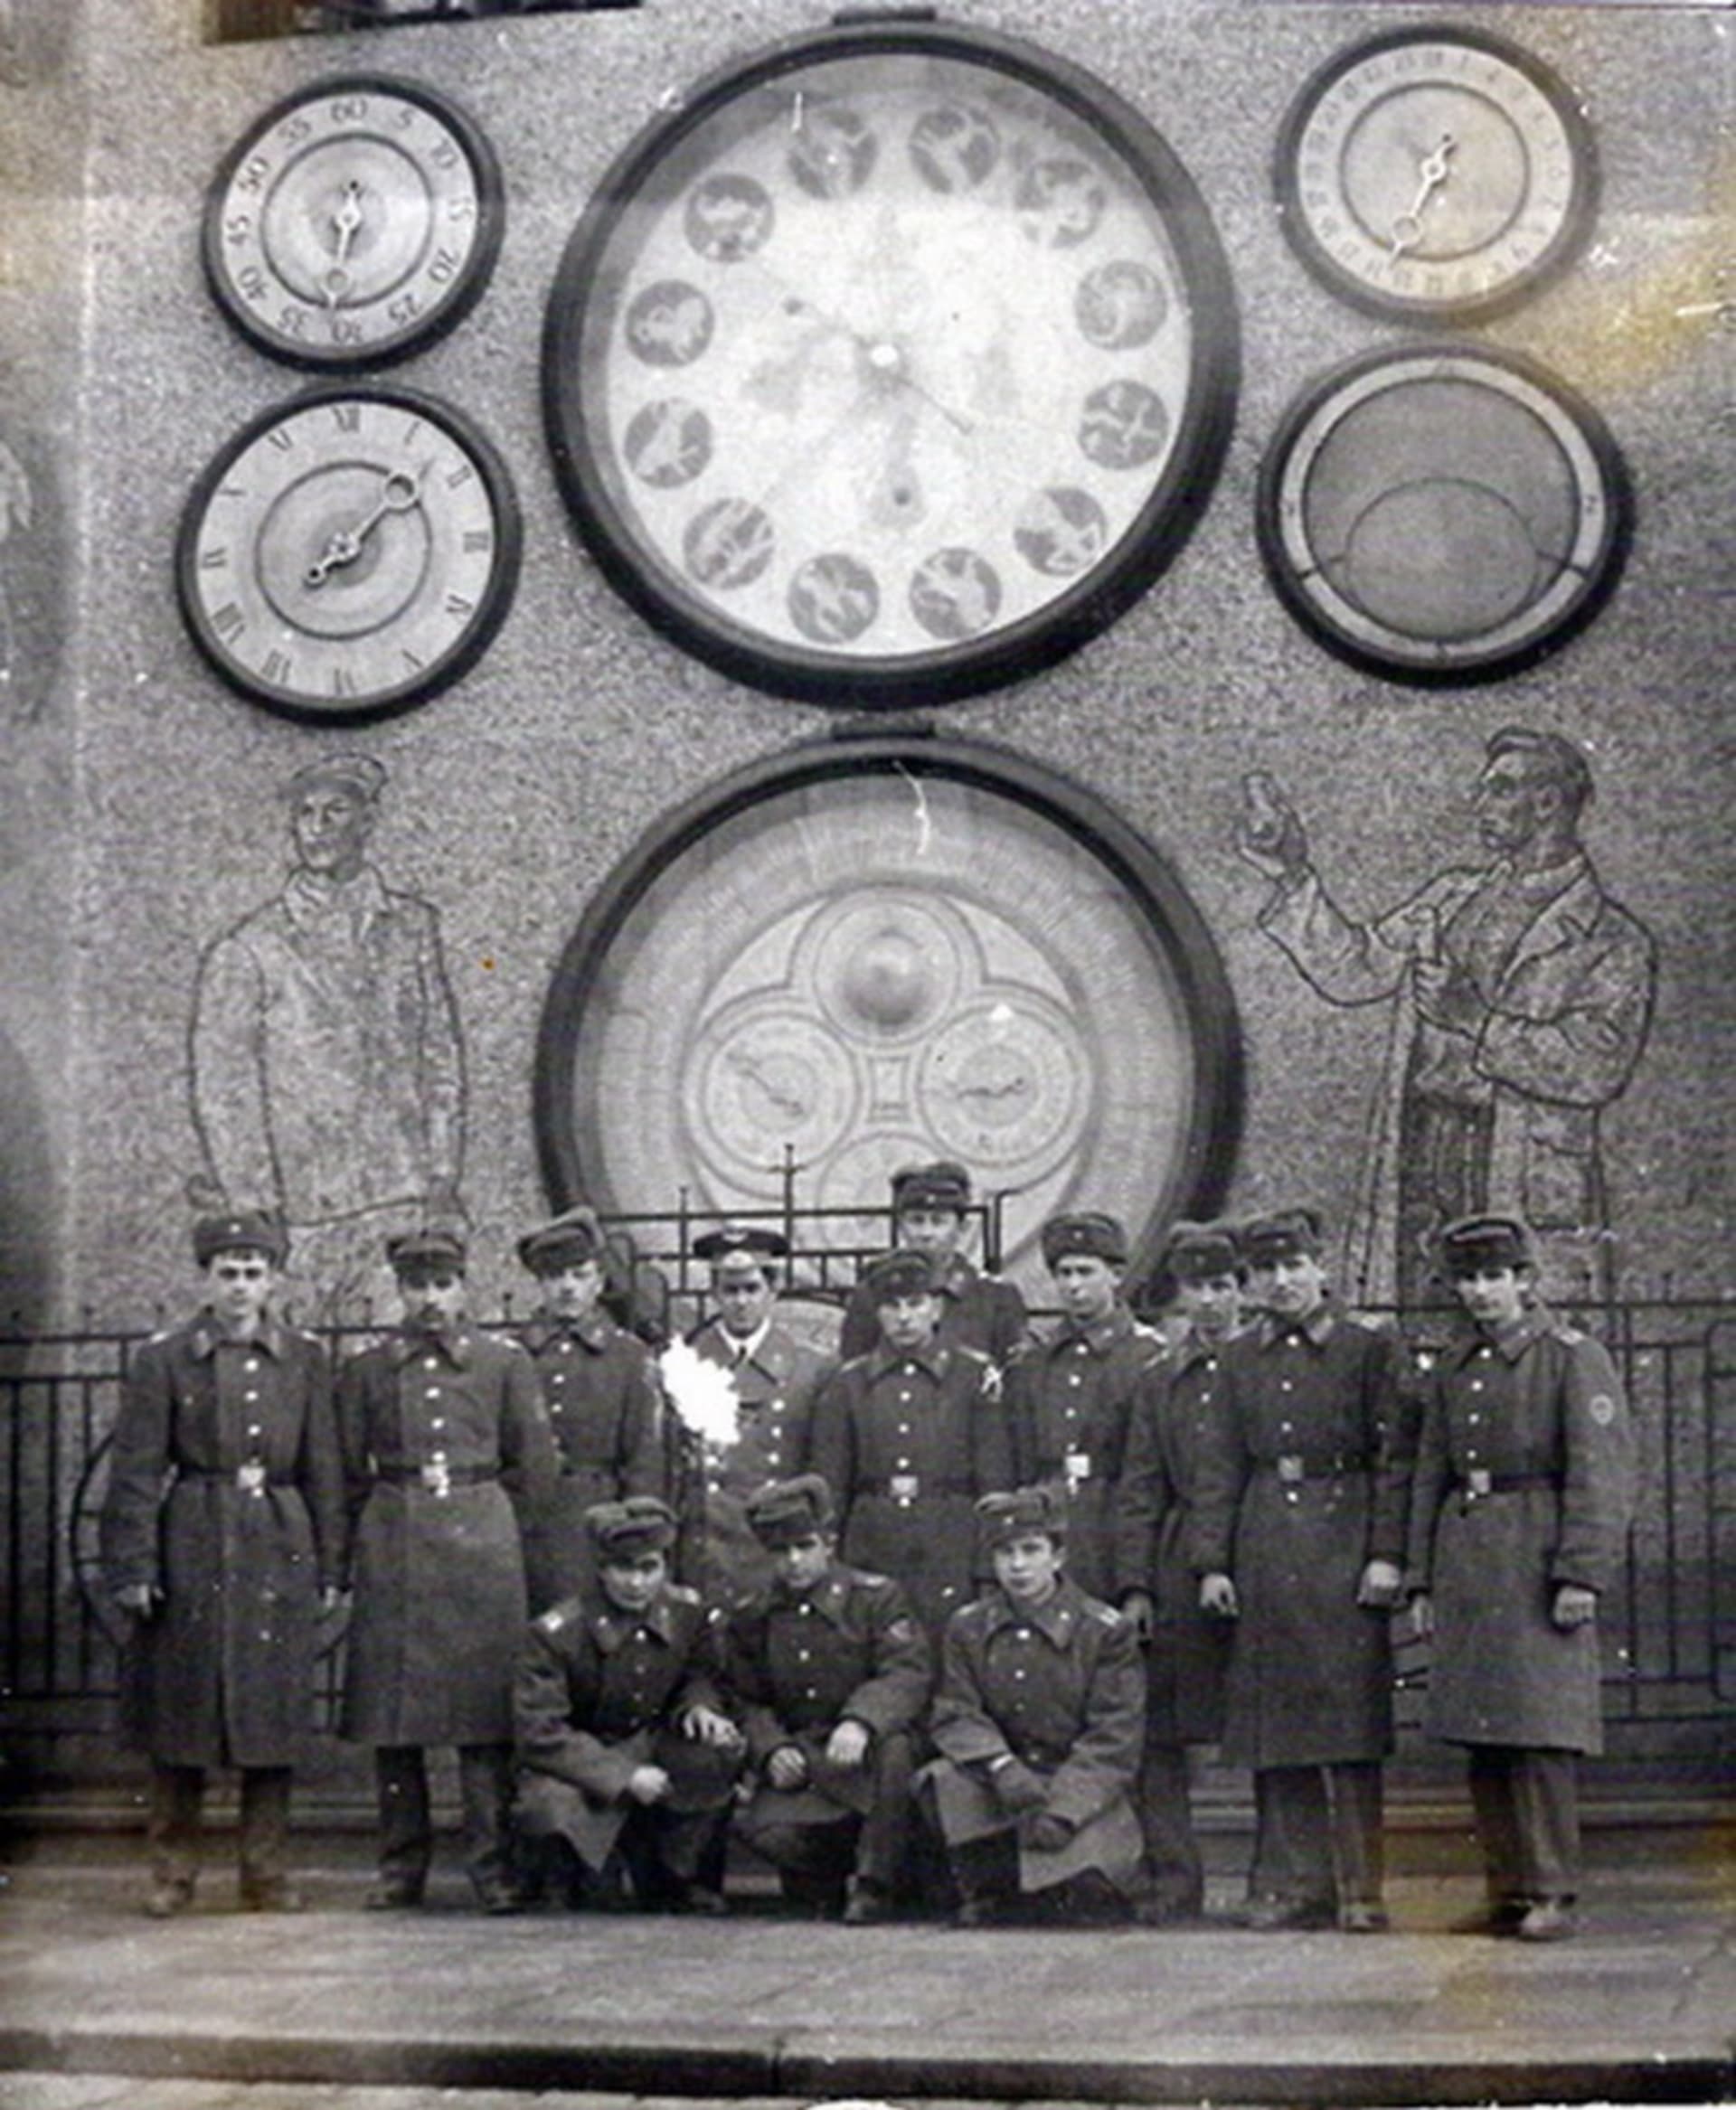 Sovětští vojáci před olomouckým orlojem. Foto: Fórum sovětských veteránů